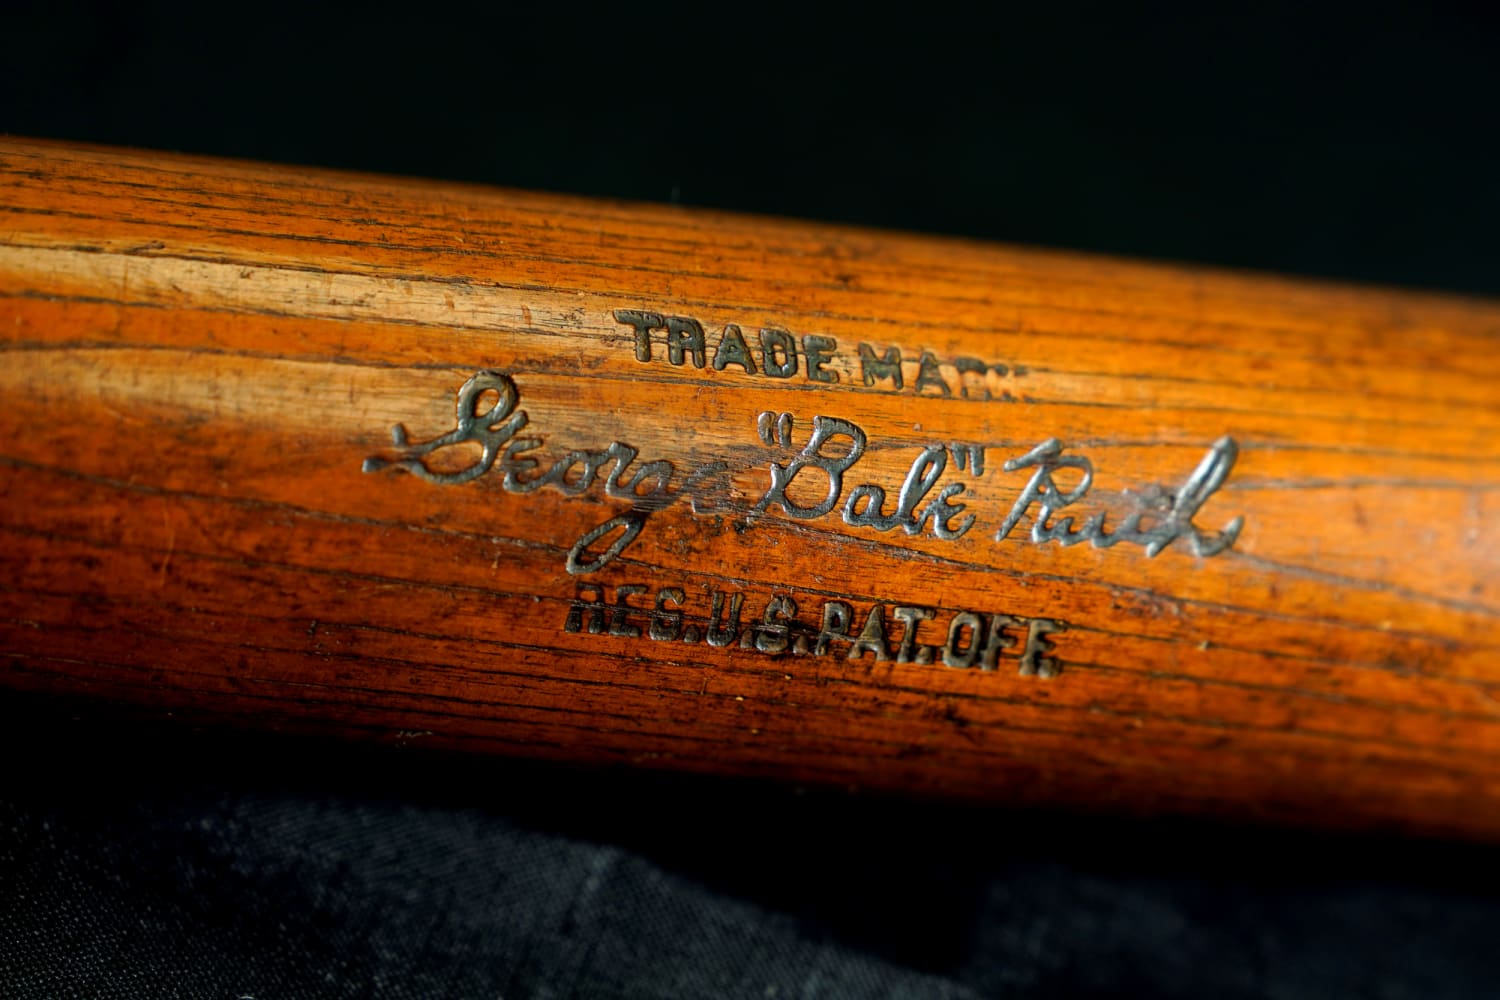 Highest Priced Babe Ruth Memorabilia